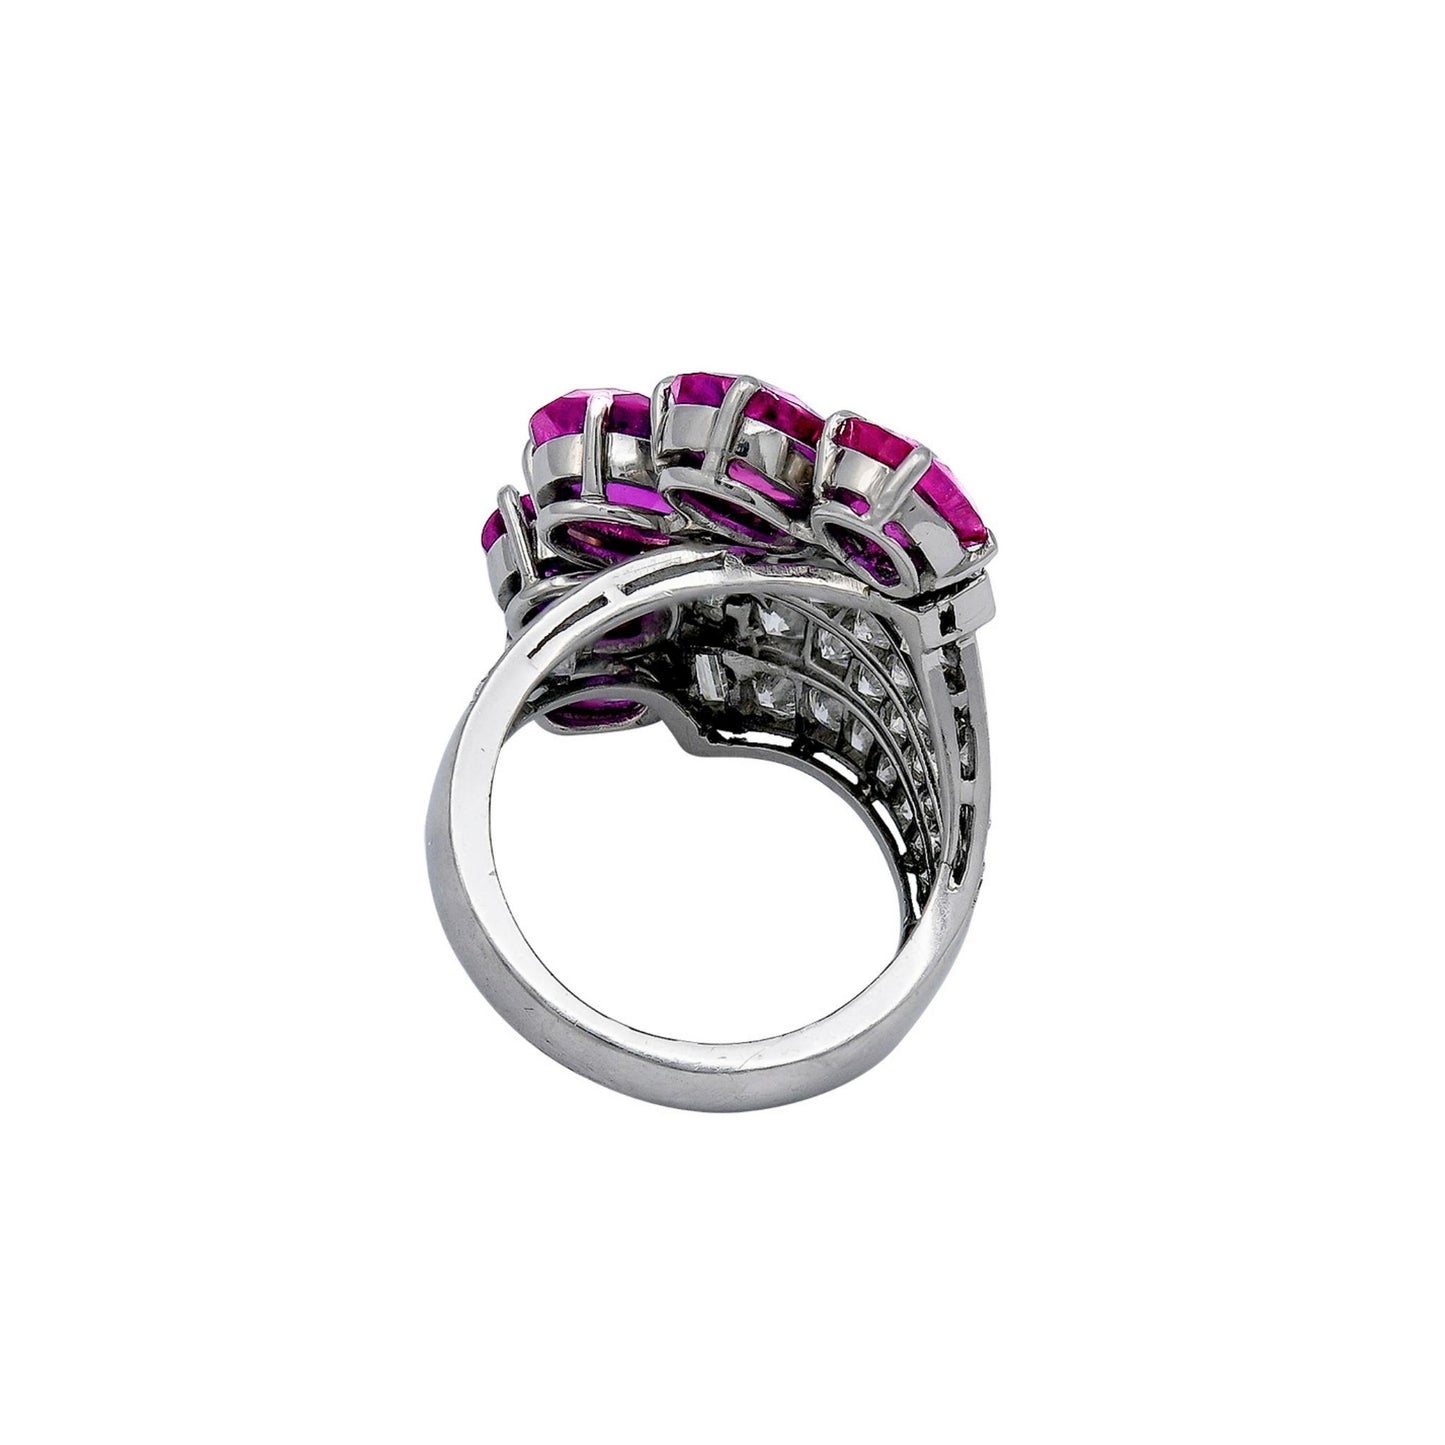 Paul Flato Jewelry Pink Sapphire Fan Ring